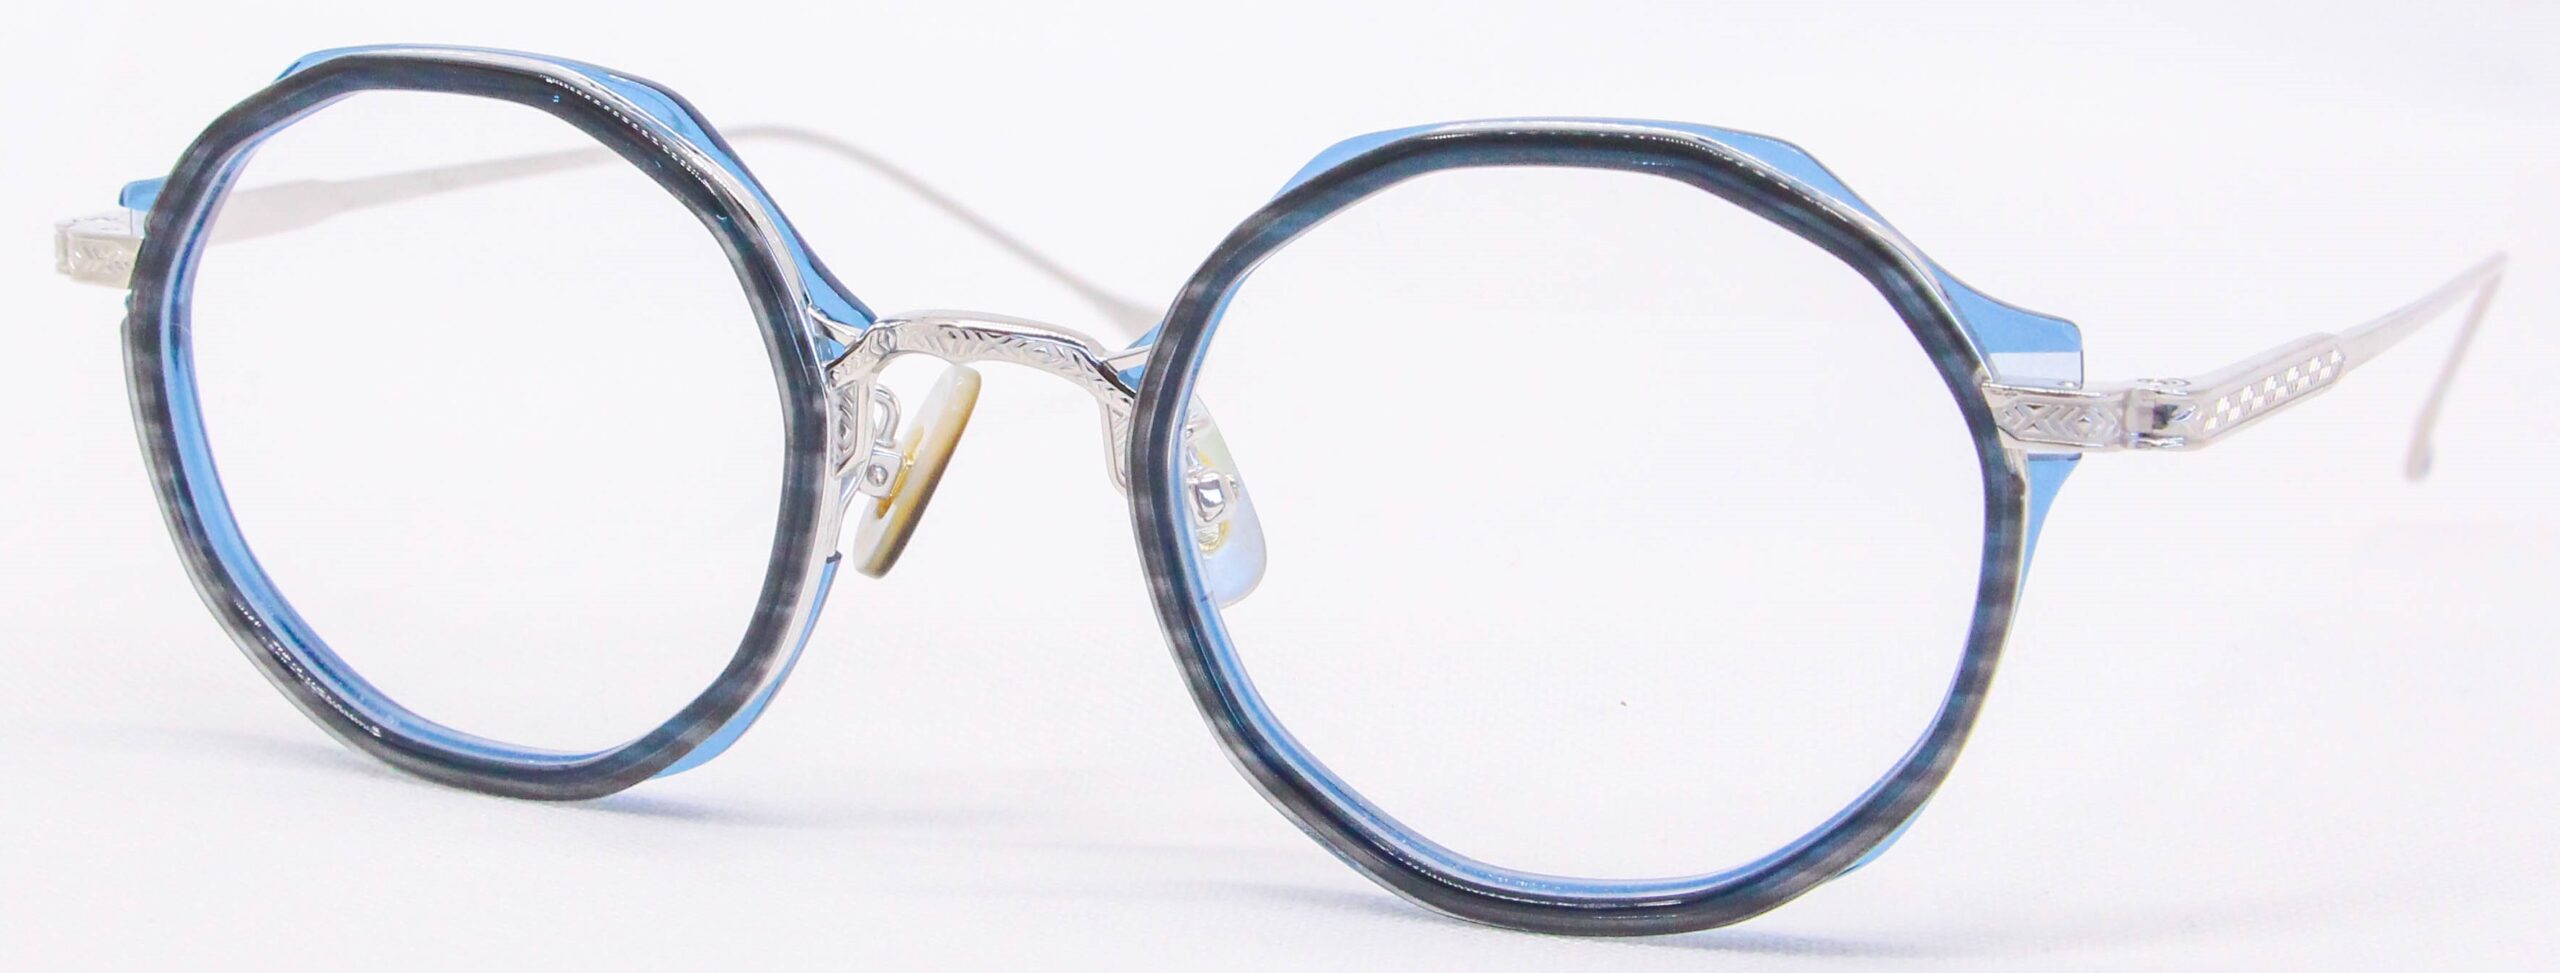 眼鏡のカラータイプC-4 Gray-Blue/Silver